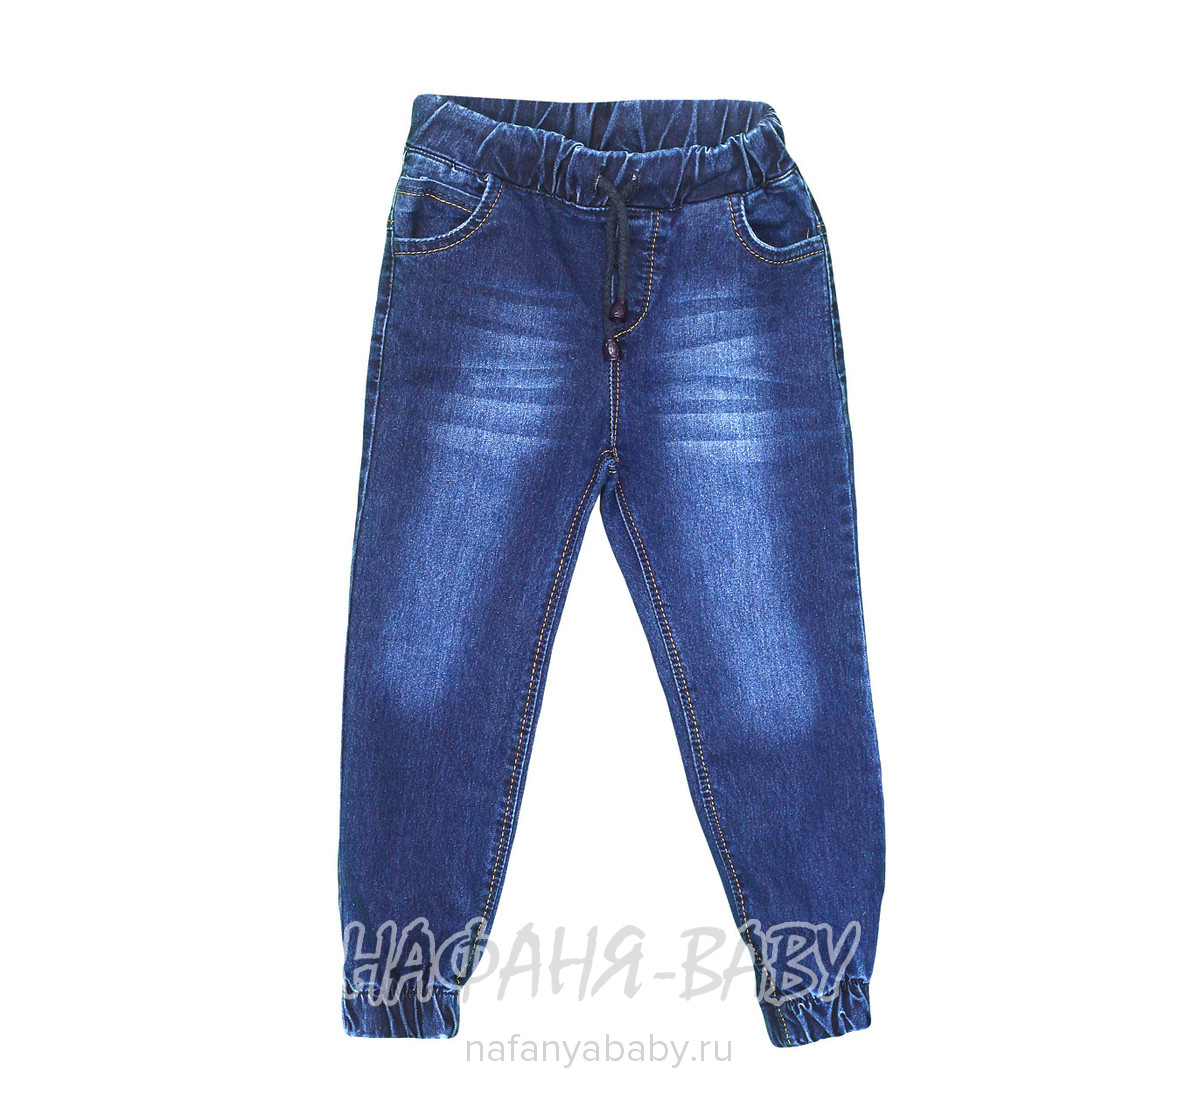 Подростковые джинсы TATI Jeans арт: 1946, 10-15 лет, 5-9 лет, оптом Турция